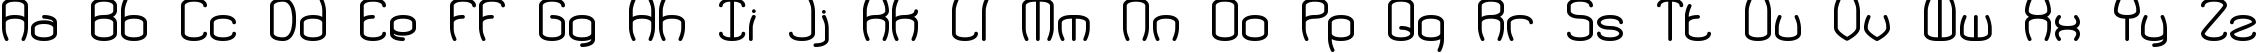 Пример написания английского алфавита шрифтом Redundant BRK